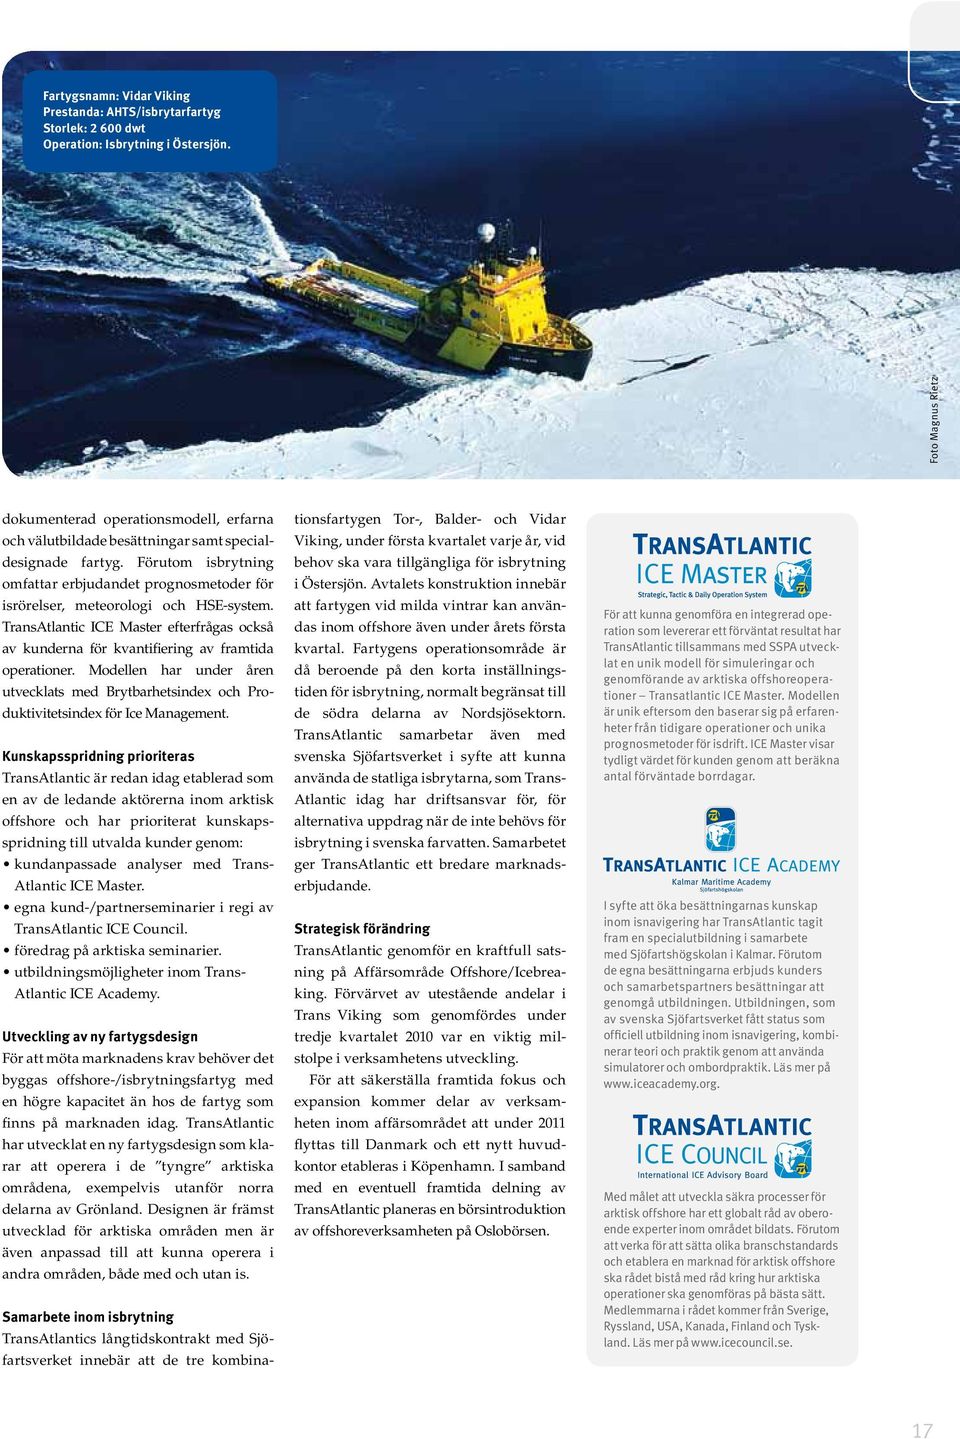 Förutom isbrytning omfattar erbjudandet prognosmetoder för isrörelser, meteorologi och HSE-system. TransAtlantic ICE Master efterfrågas också av kunderna för kvantifiering av framtida operationer.